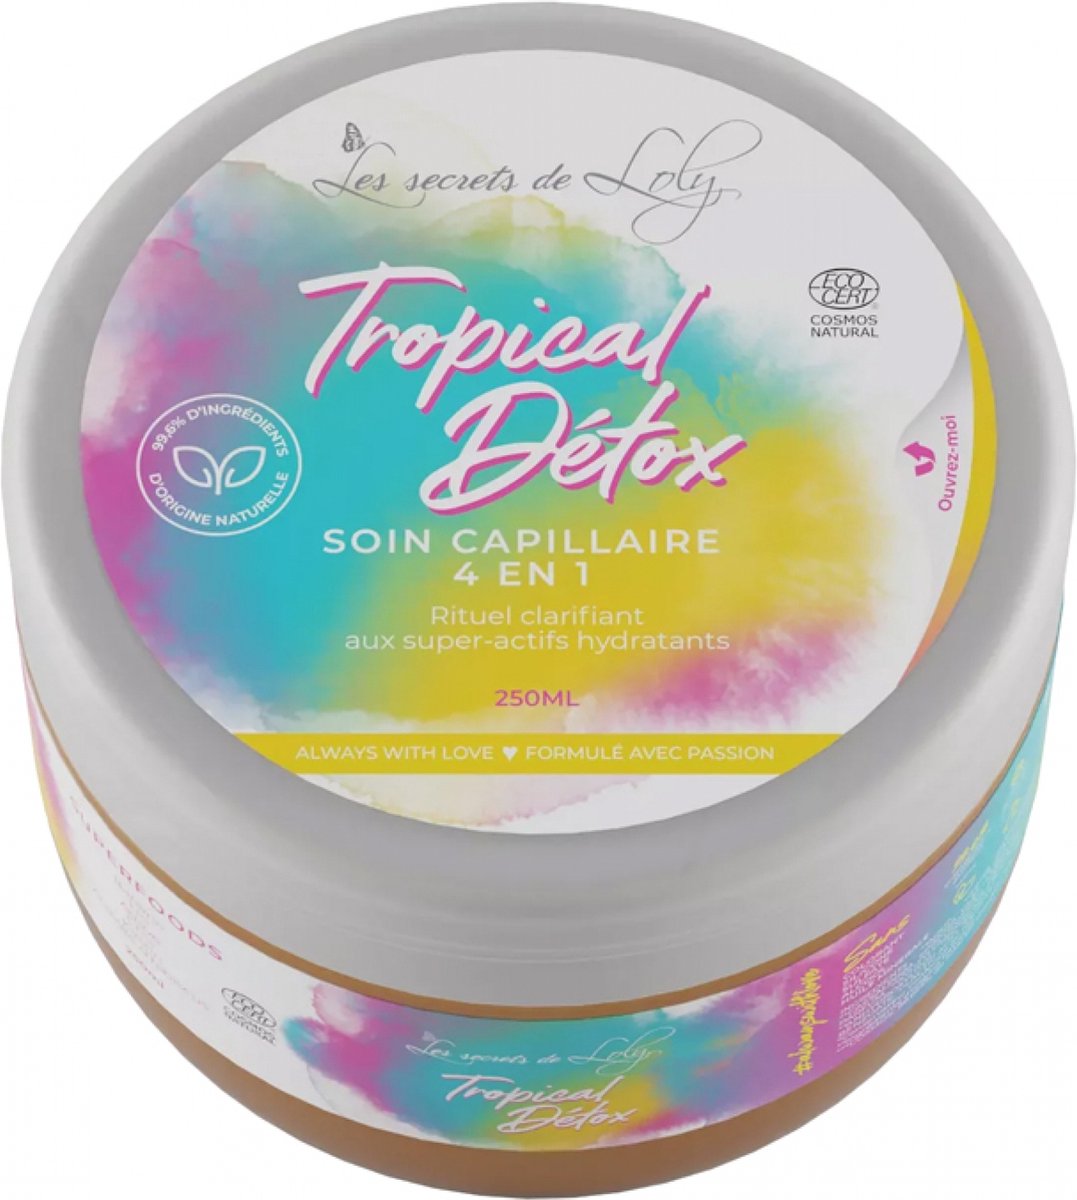 Les Secrets de Loly Soin Capillaire 4en1 Tropical Détox Bio 250 ml